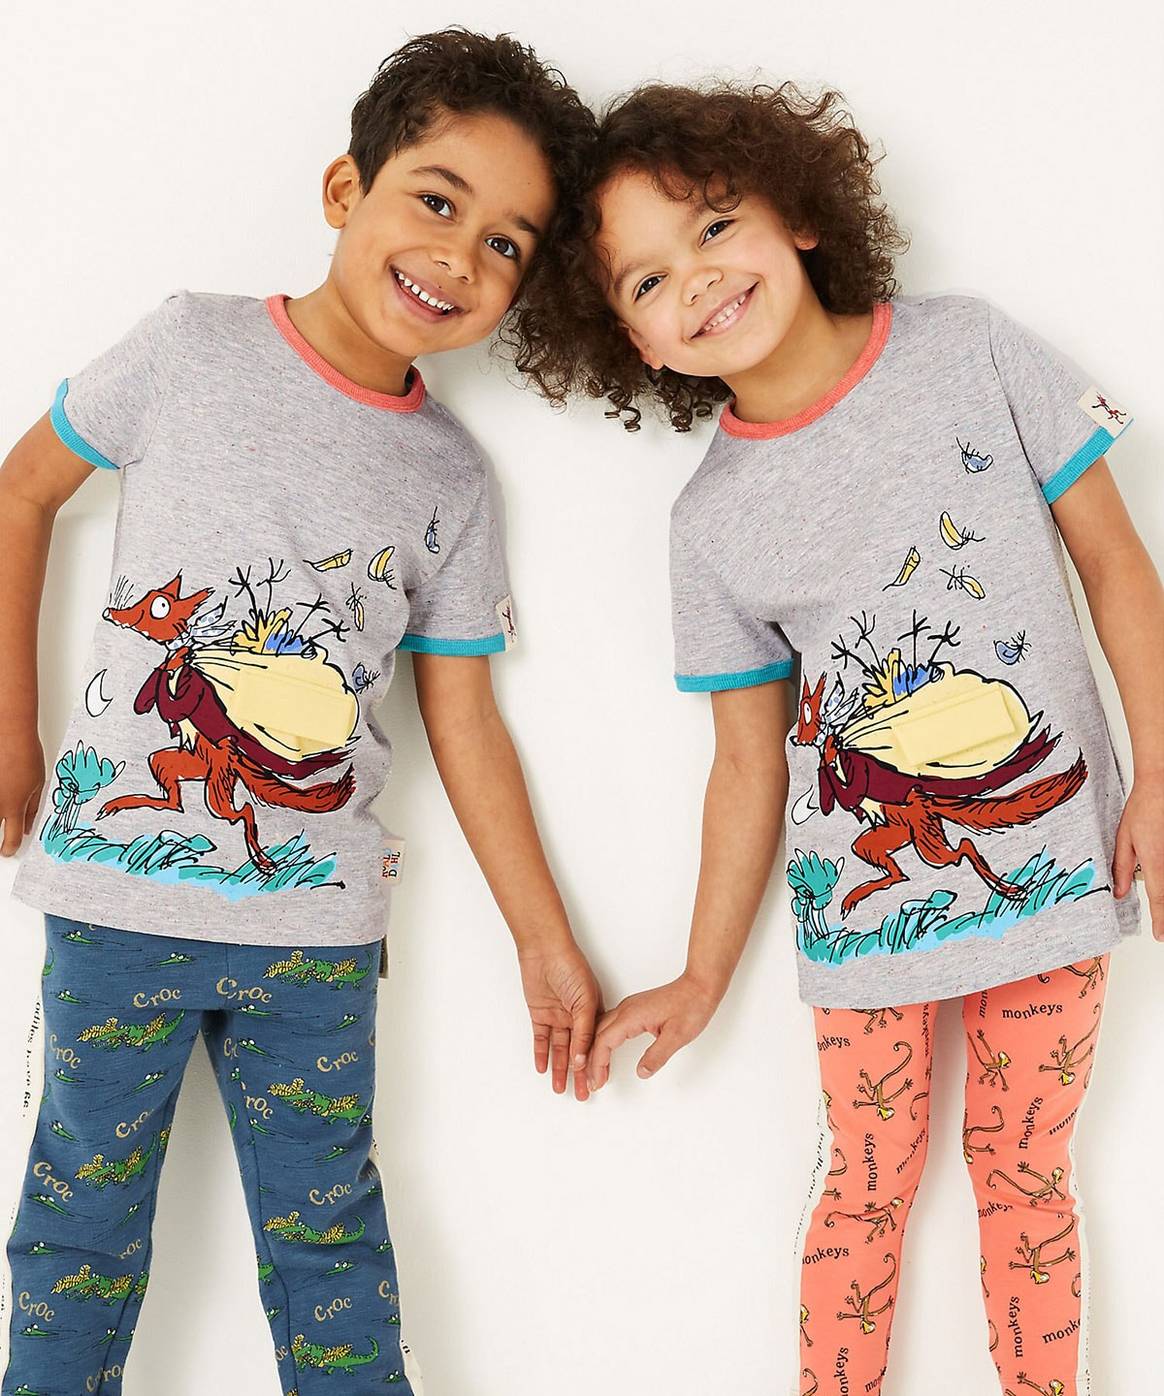 Marks and Spencer lanza una nueva colaboración de ropa para niños